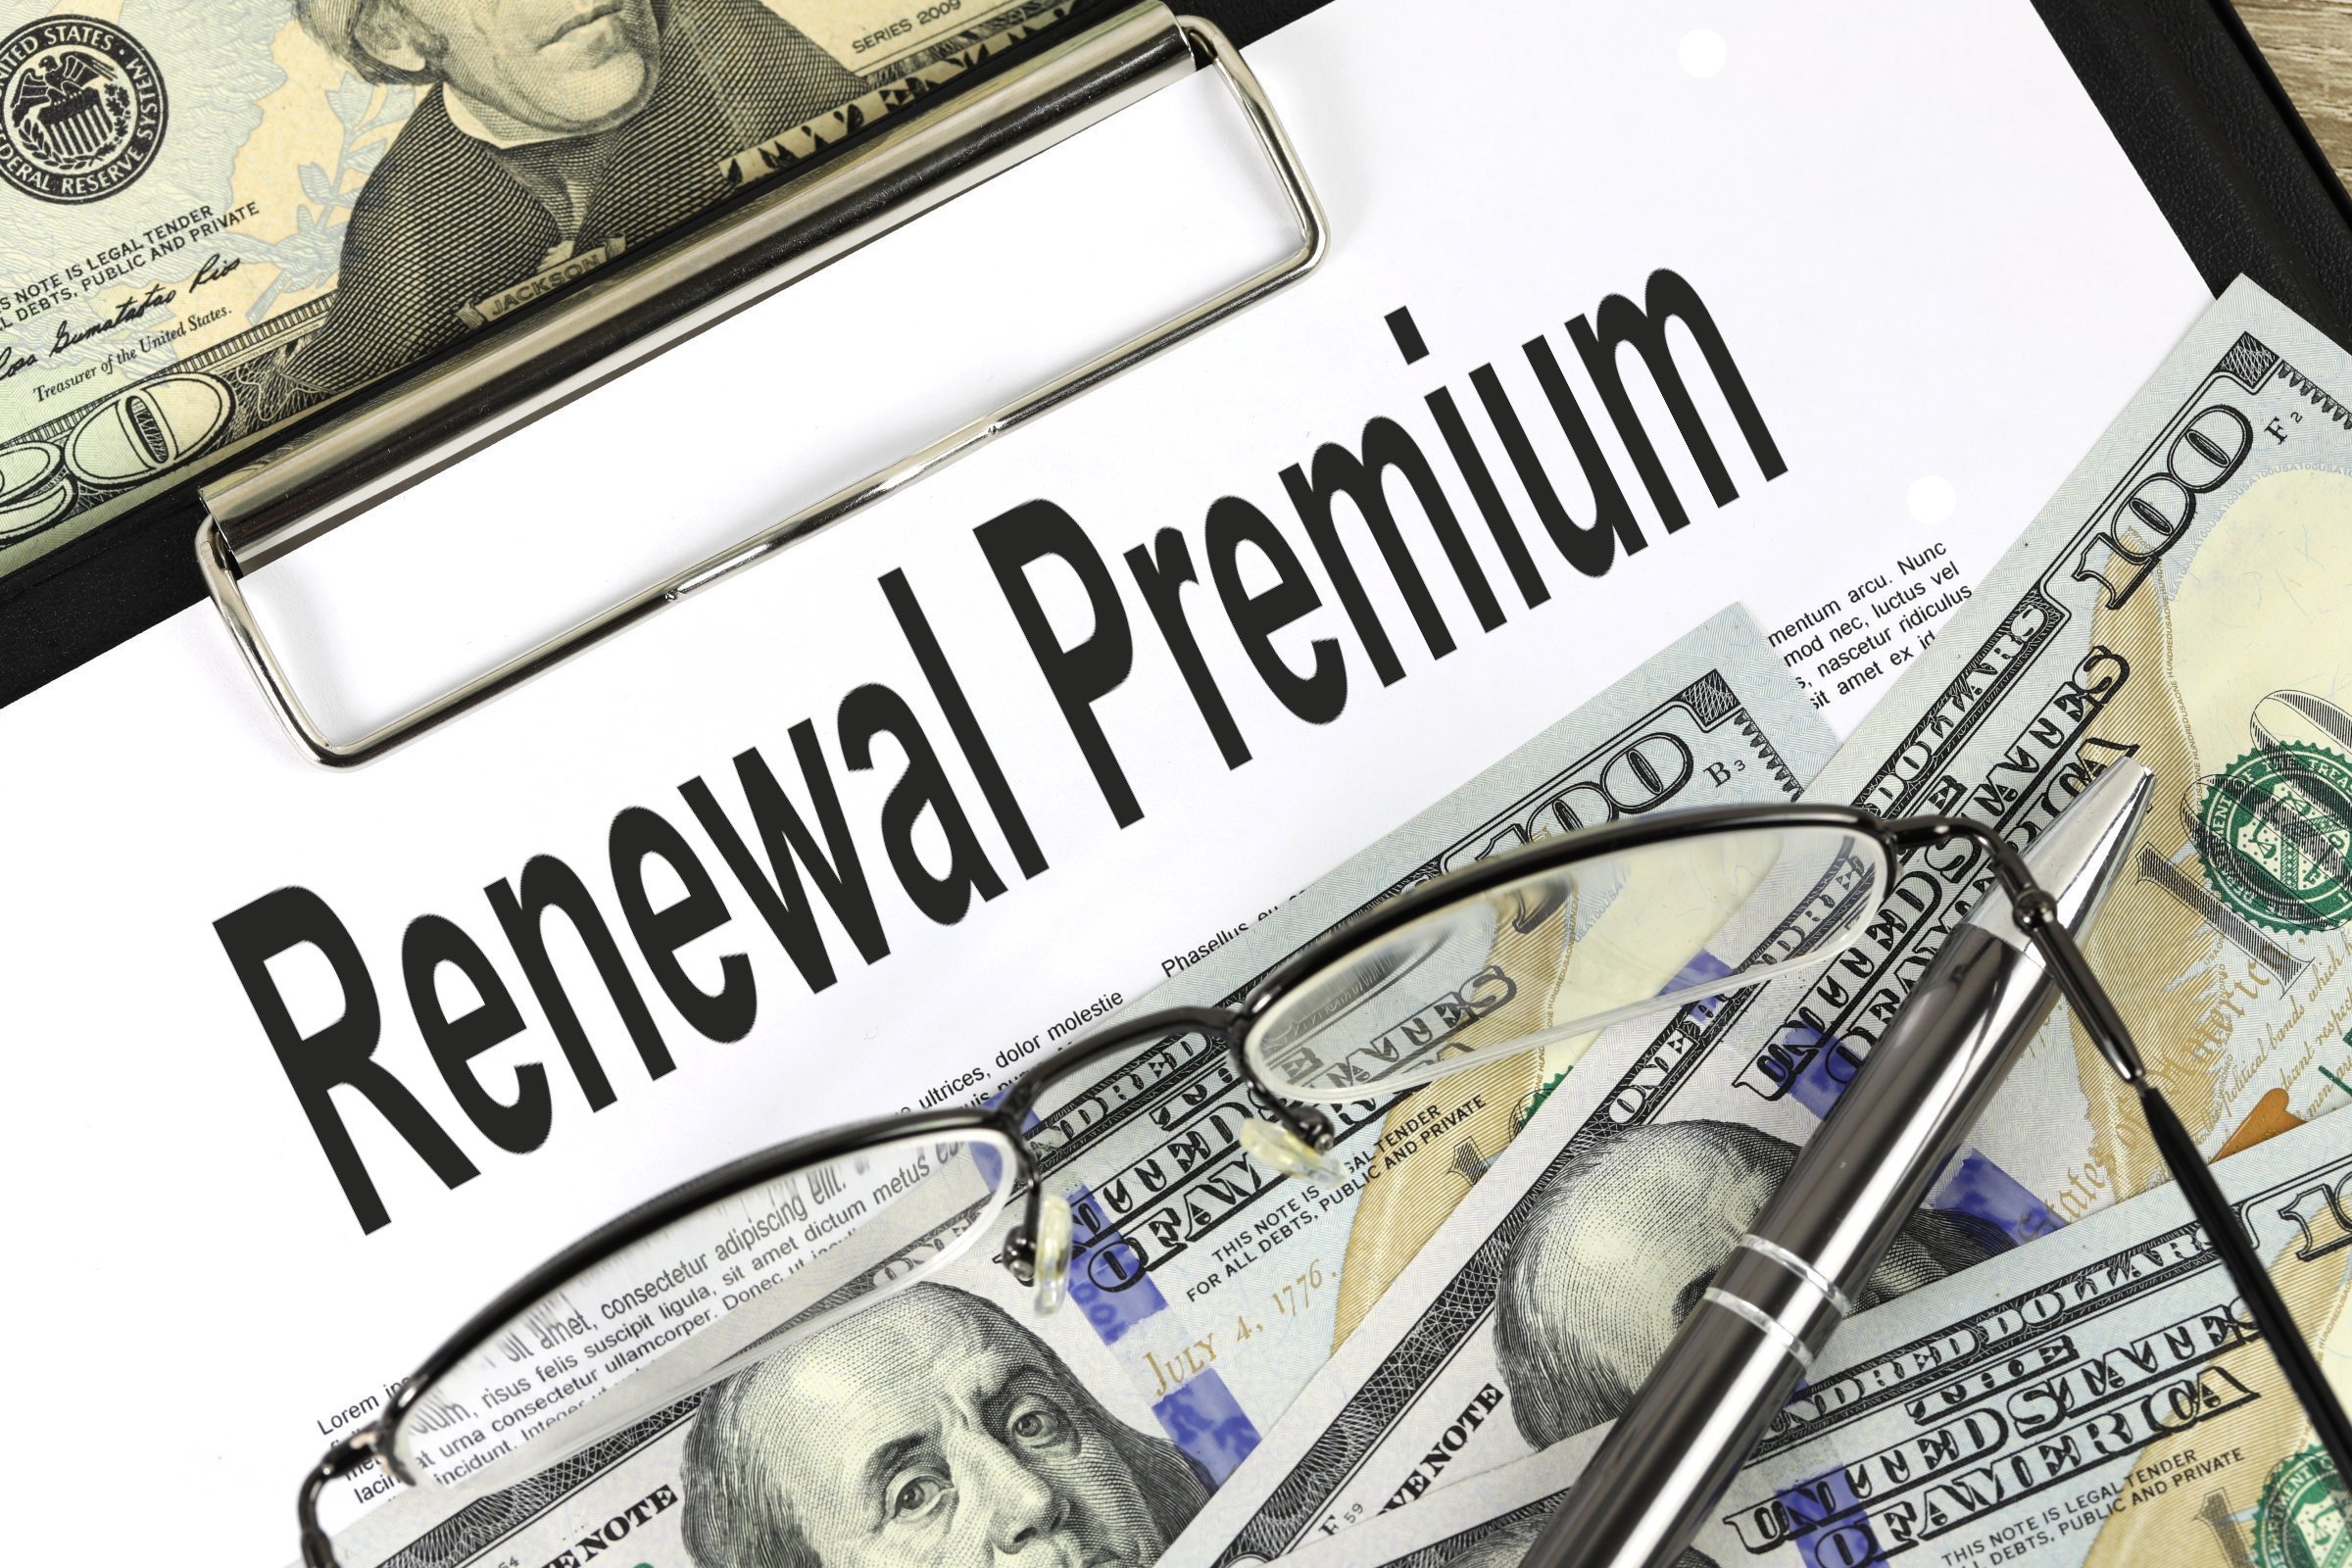 renewal premium